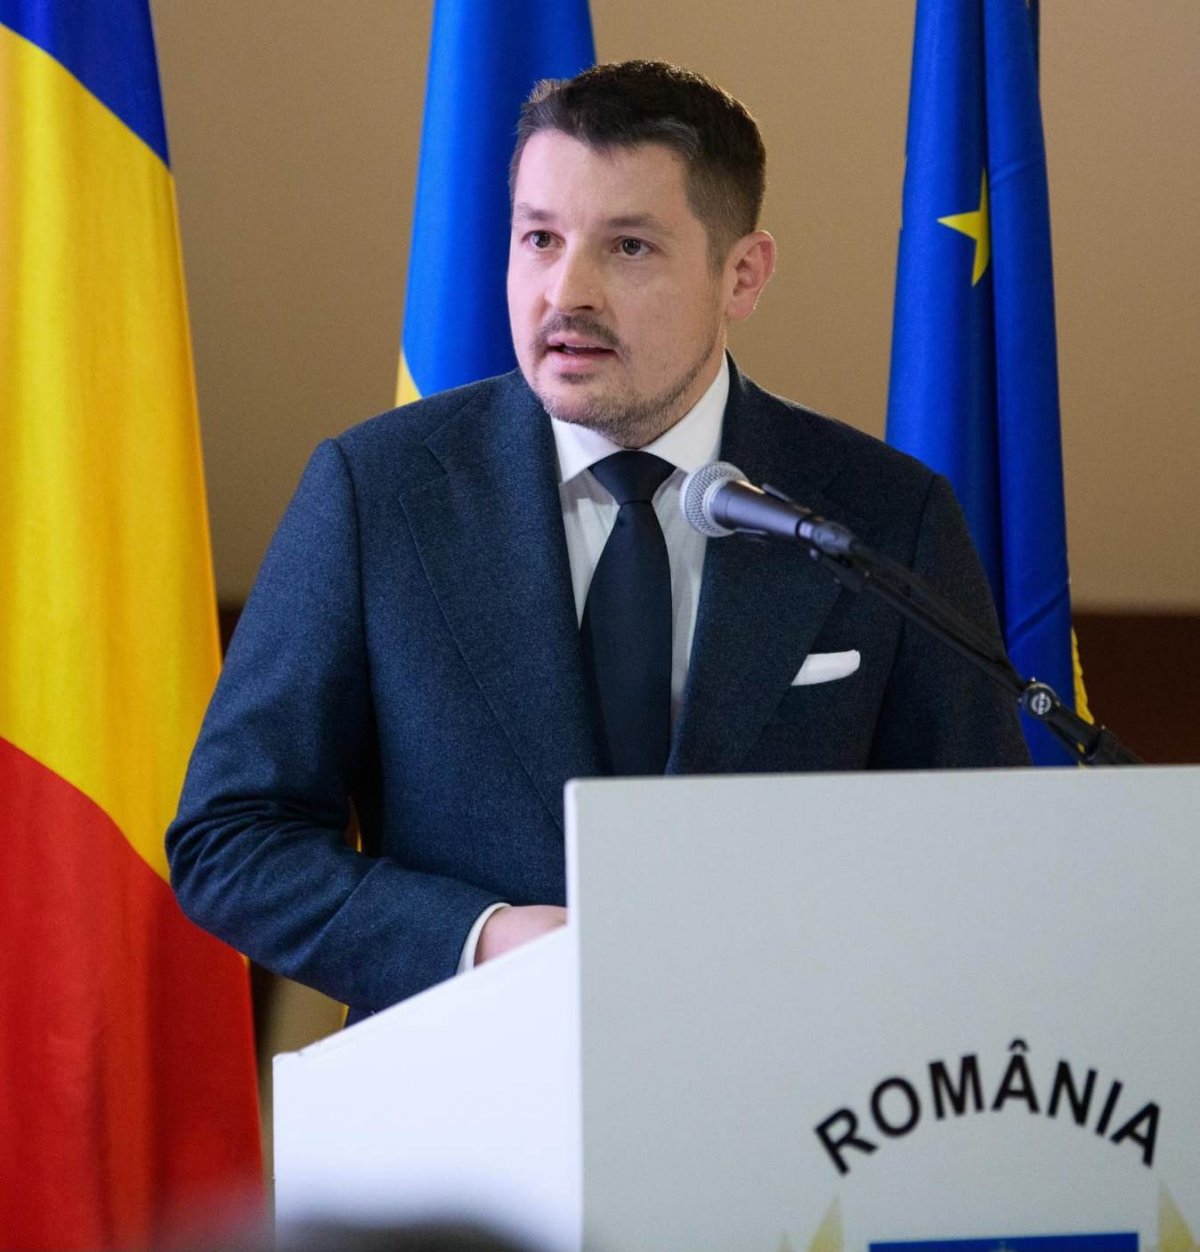 Legea lui Mihai Pașca referitoare la ordinul de protecție a fost votată